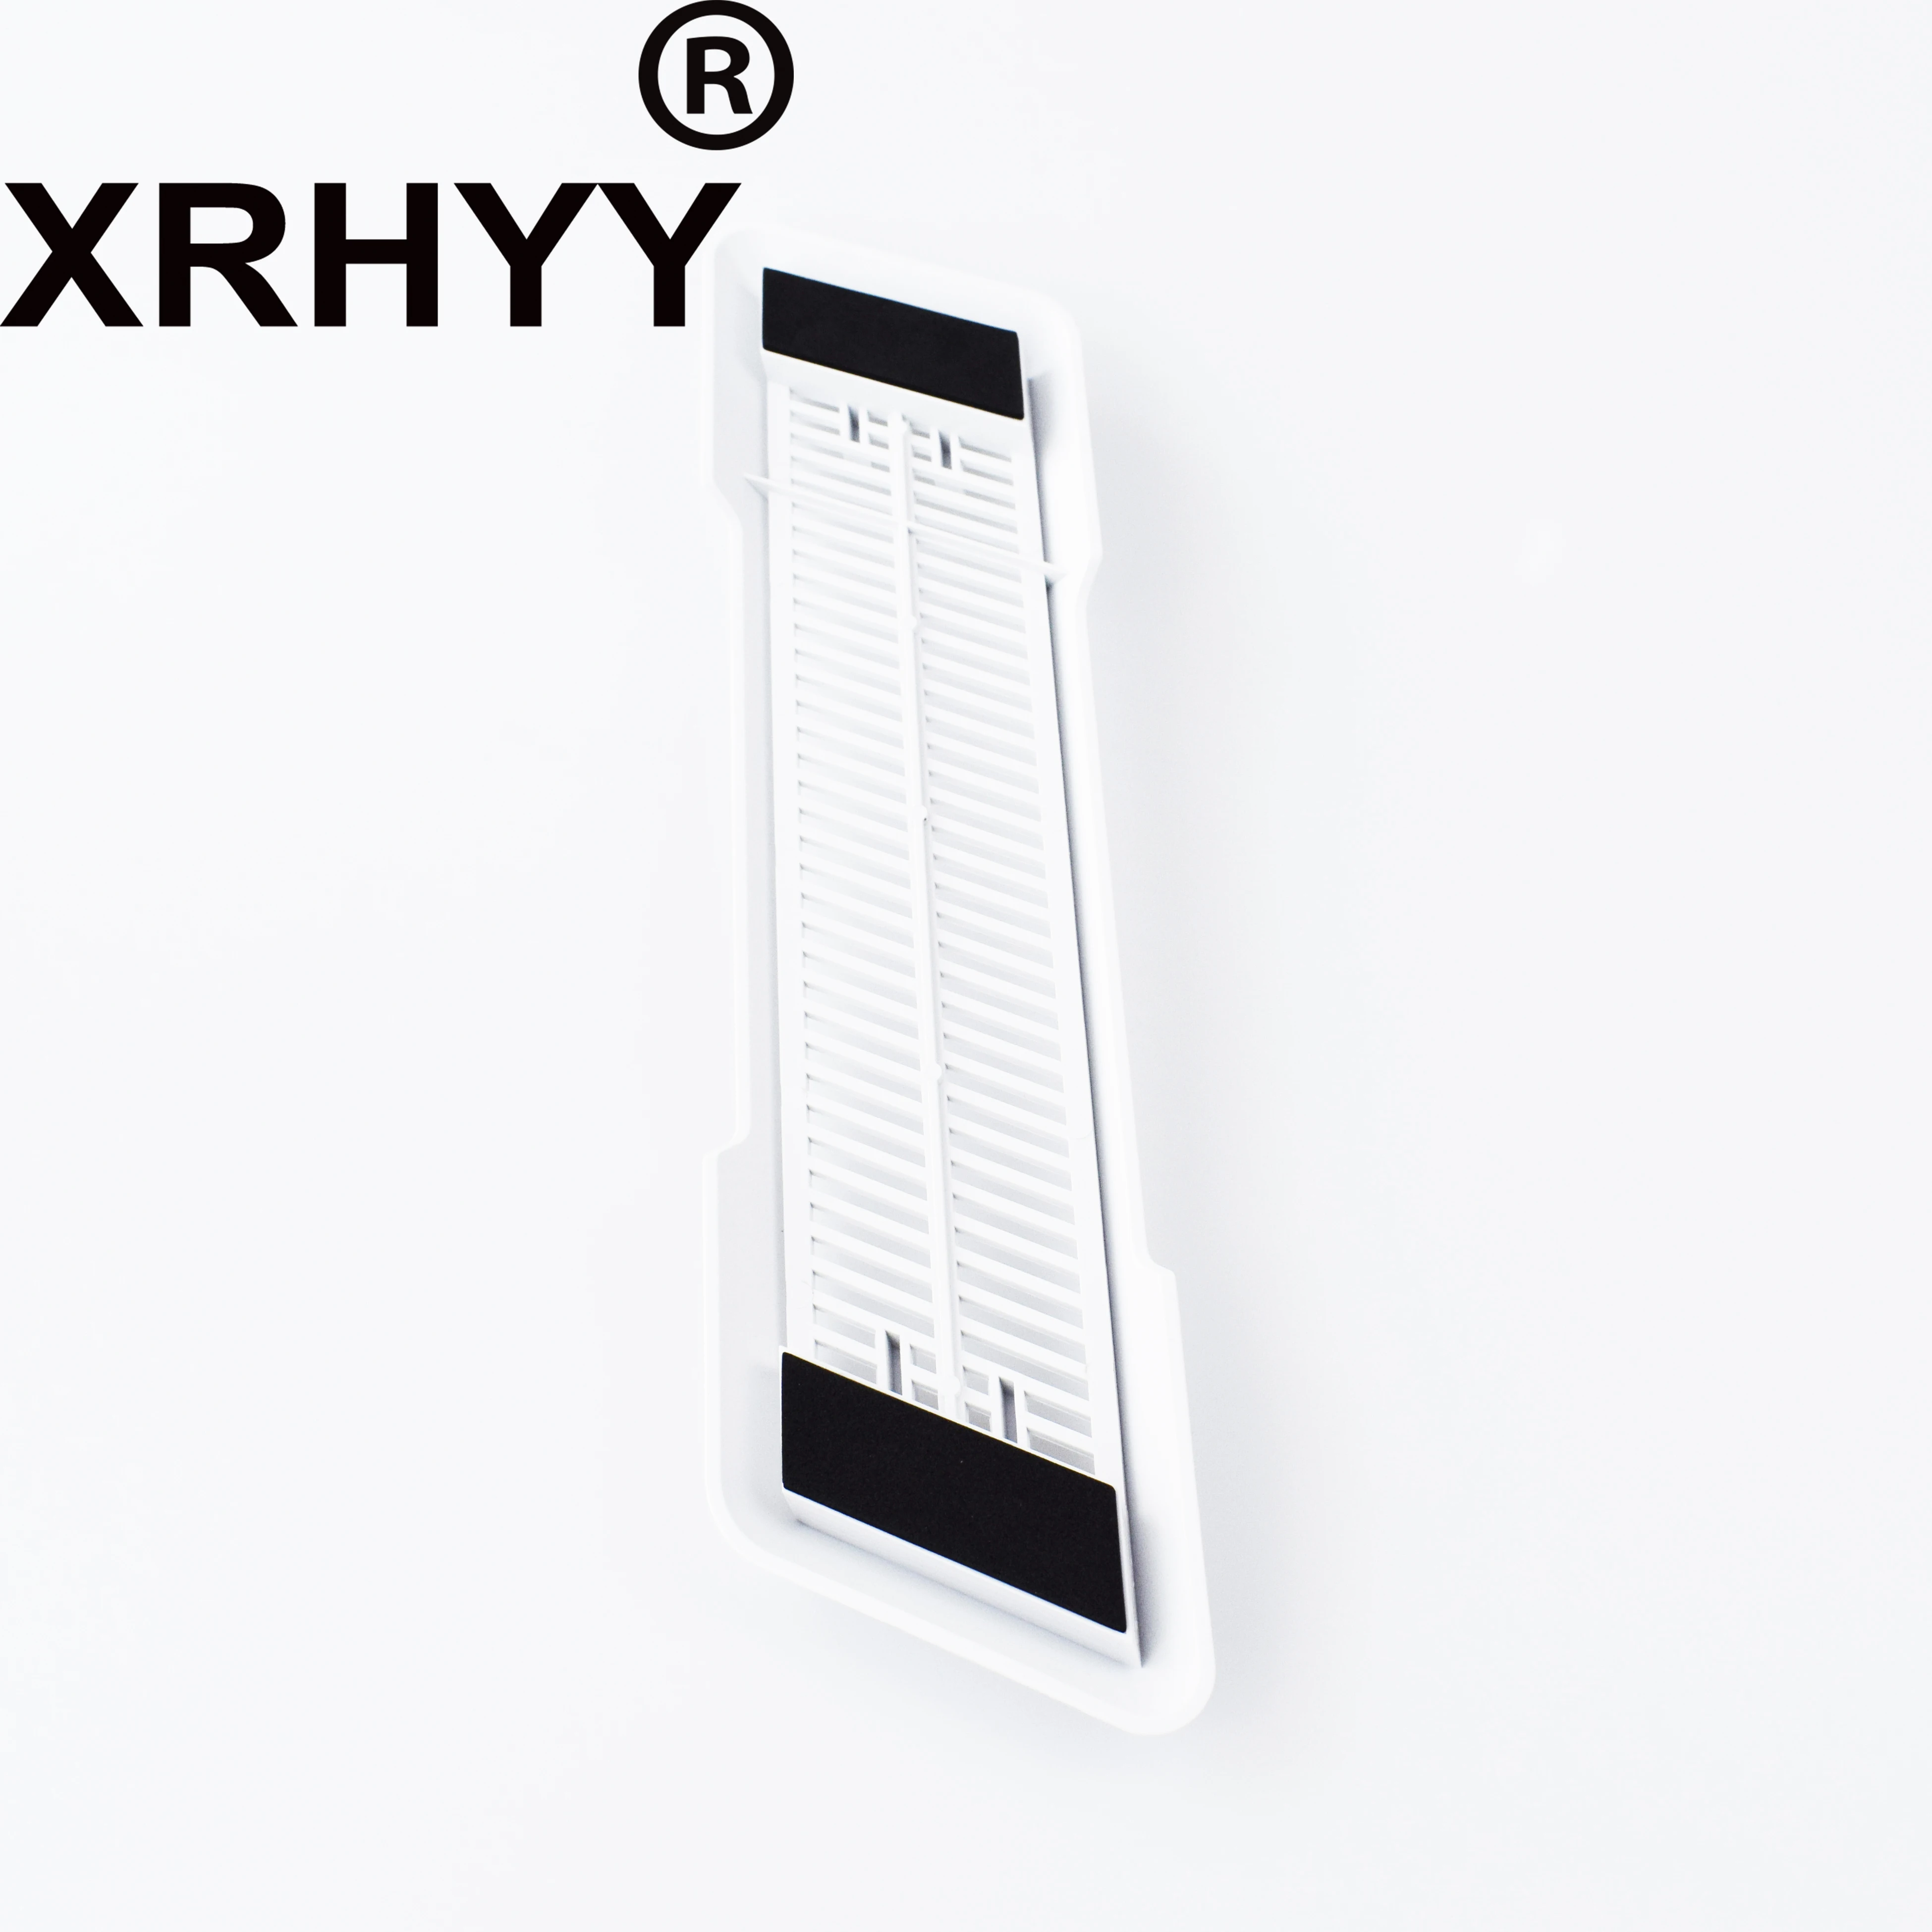 XRHYY PS4 Pro вертикальная подставка для Playstation 4 Pro со встроенными вентиляционными отверстиями и нескользящими ножками(белый